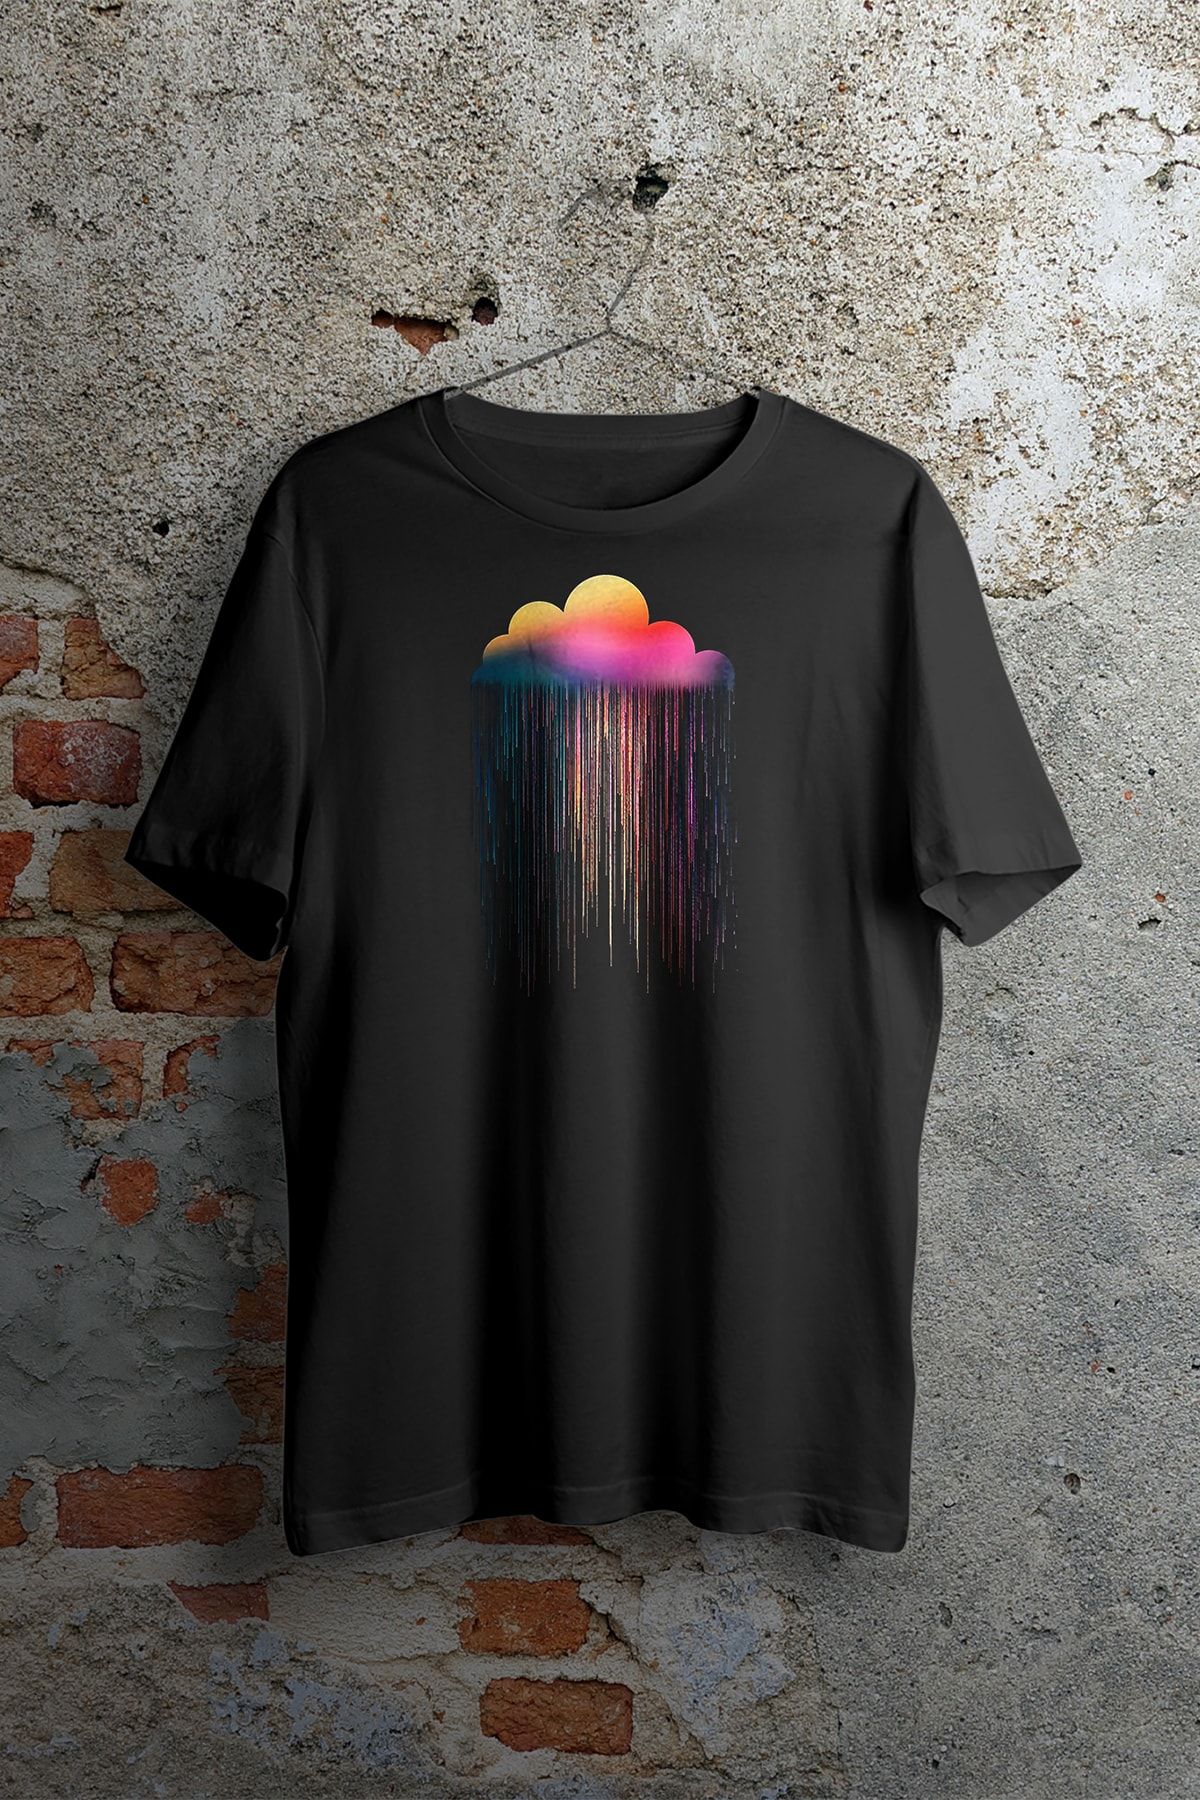 WePOD Cloud Drops Baskılı T-shirt Baskılı Siyah Kısa Kollu Unisex Tişört